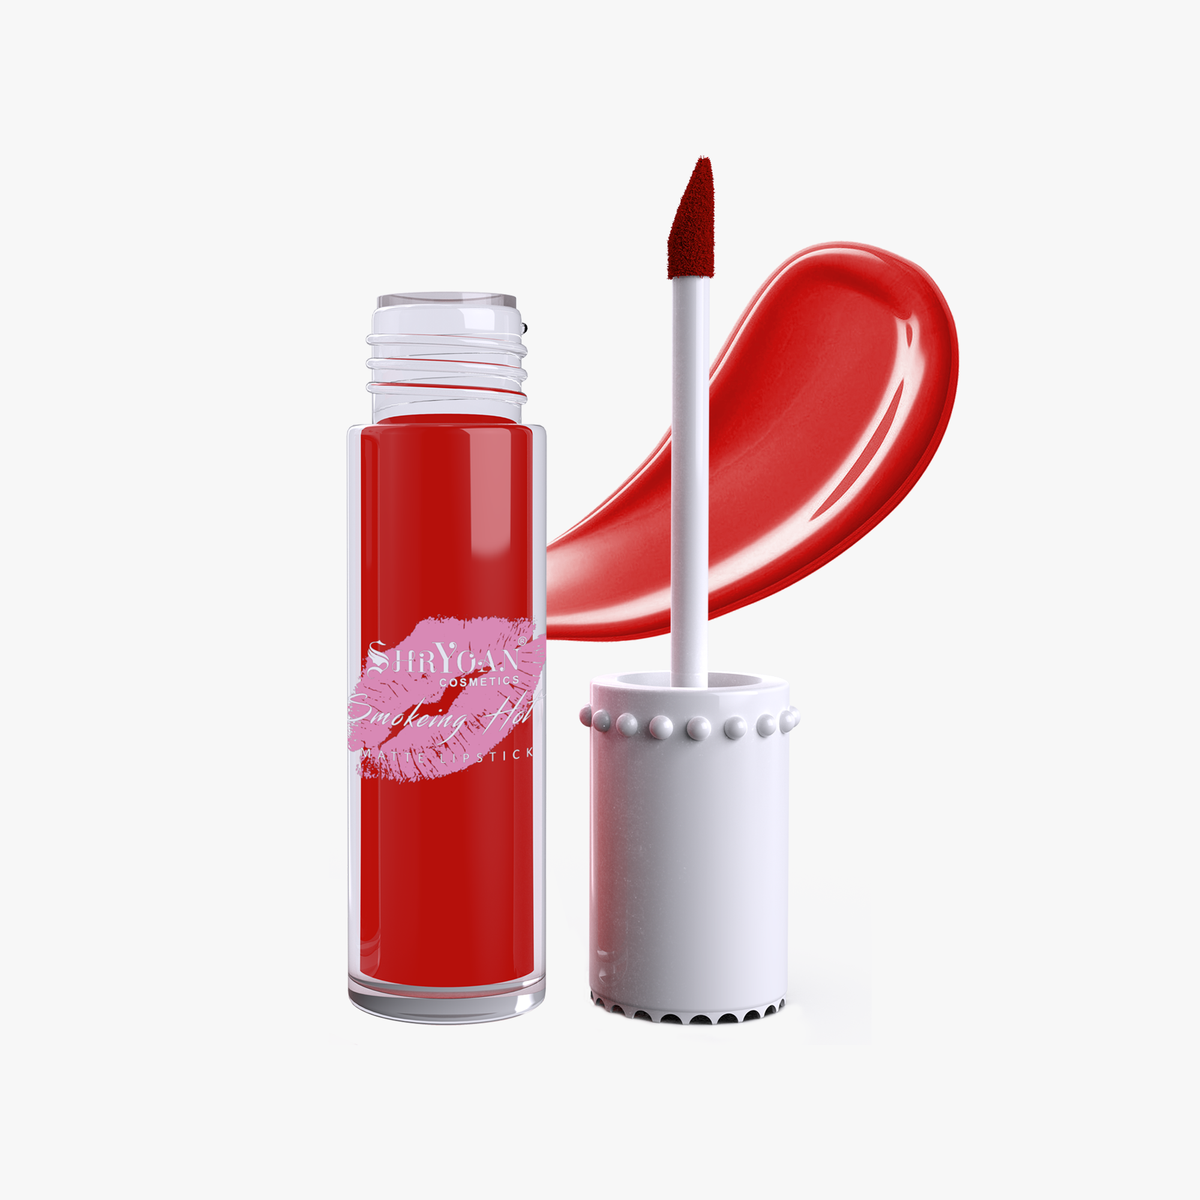 Shryoan Lippi Gift Matte Lip Gloss Pack Of 6 Mix